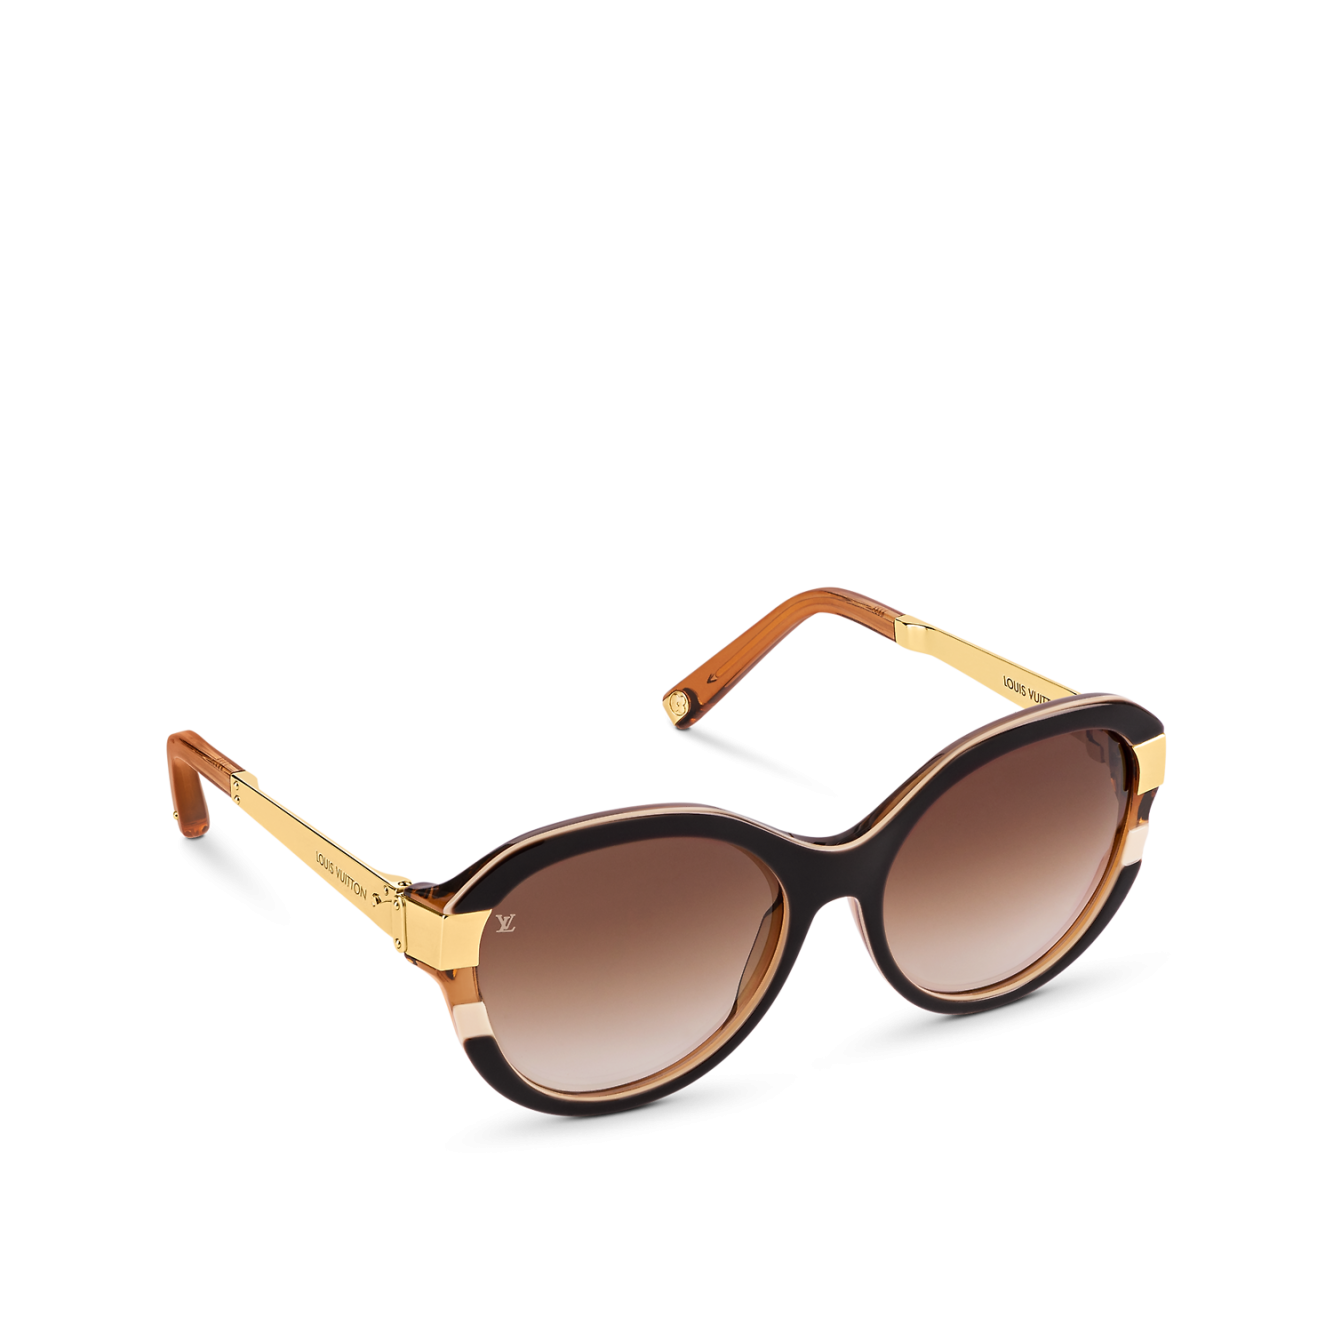 Louis Vuitton Petit Soupçon Cat Eye Sunglasses - Vitkac shop online